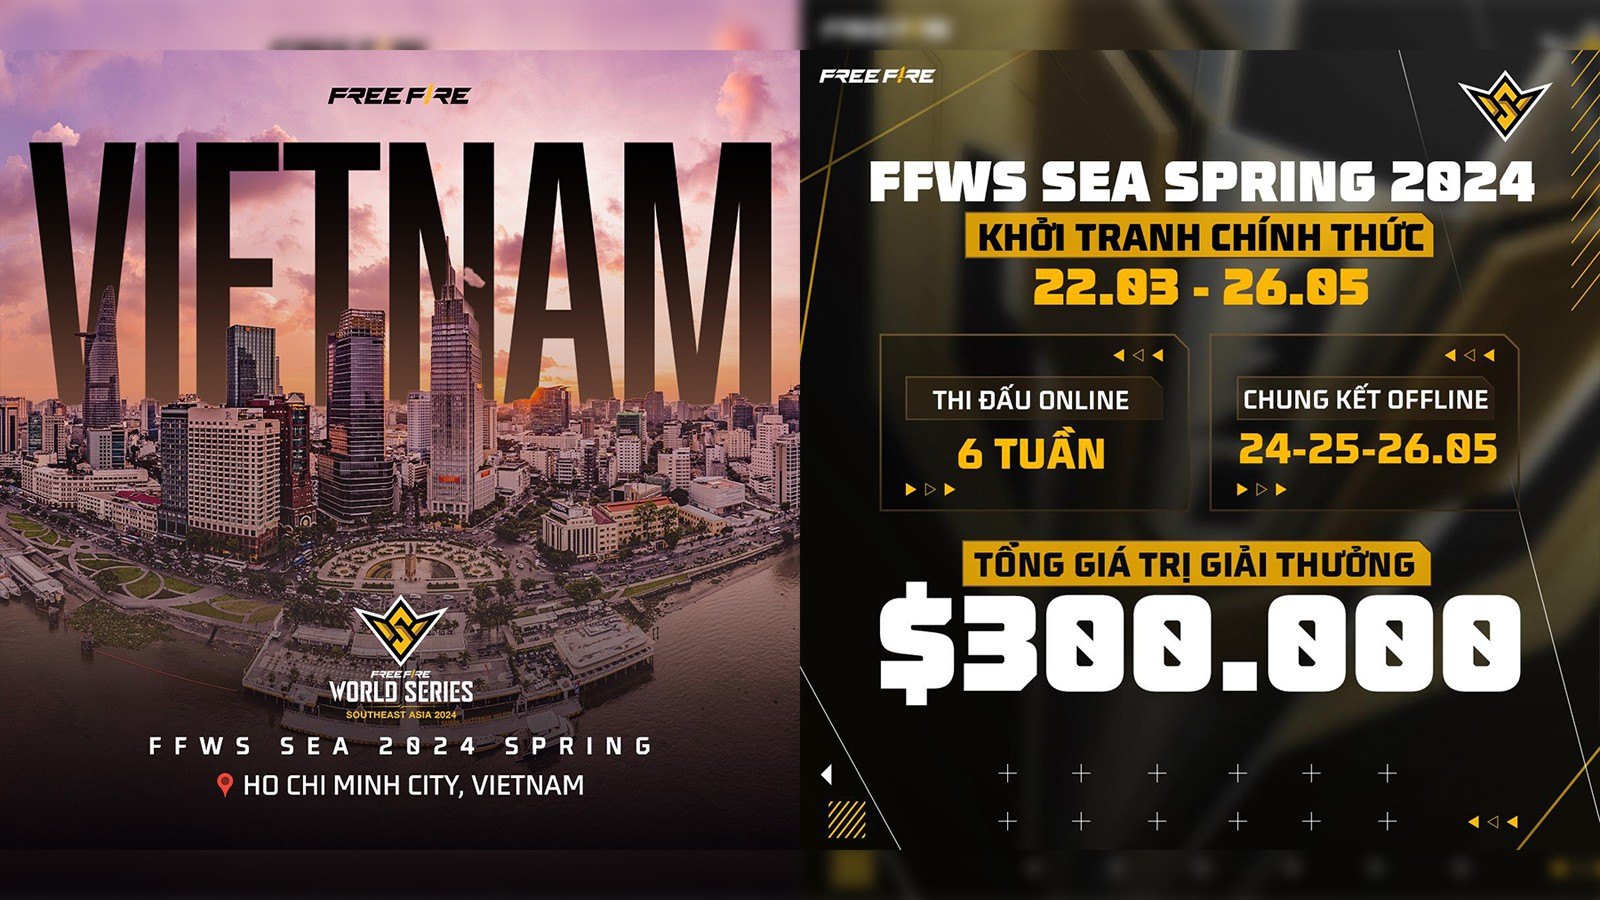 Chung Kết Free Fire World Series SEA 2024 Spring sẽ được tổ chức tại Việt Nam